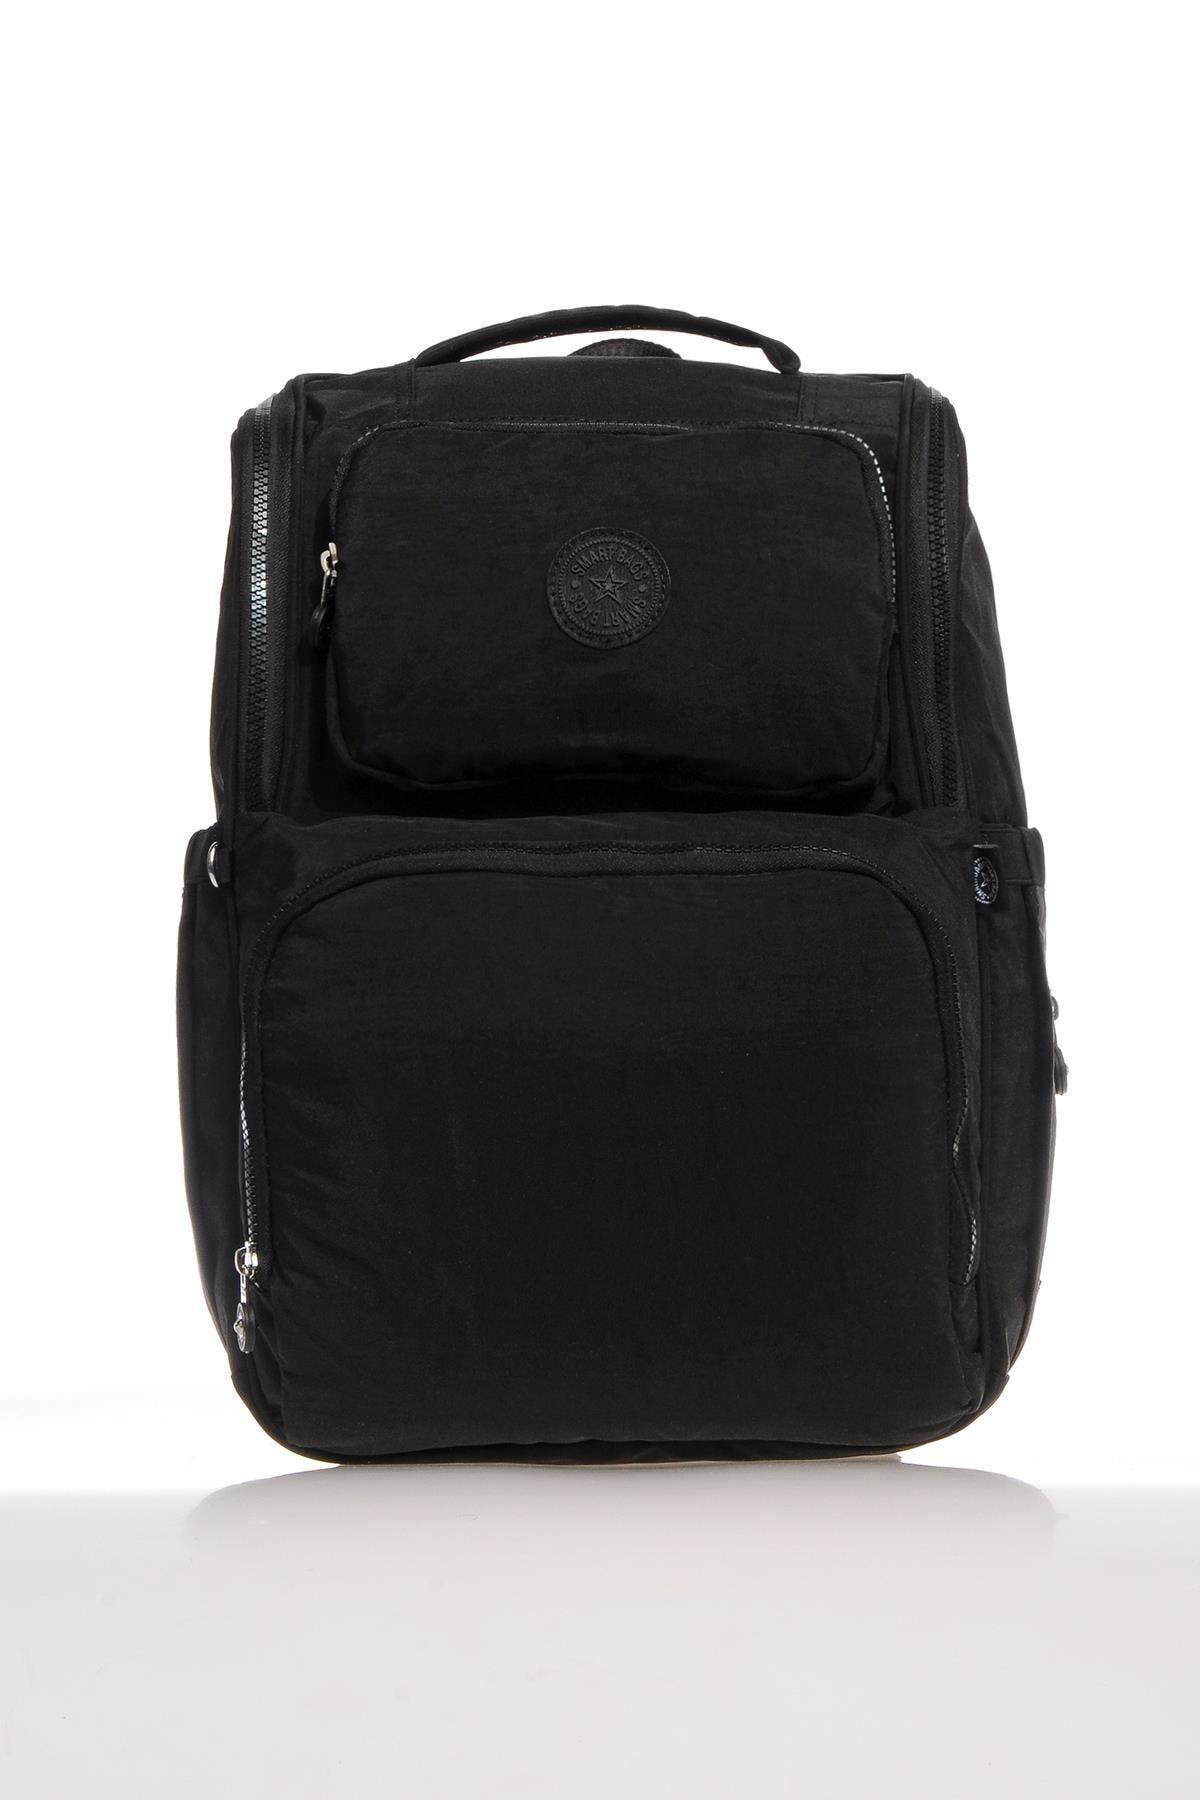 Smart Bags Smb3000-0001 Siyah Kadın Bebek Bakım Sırt Çantası